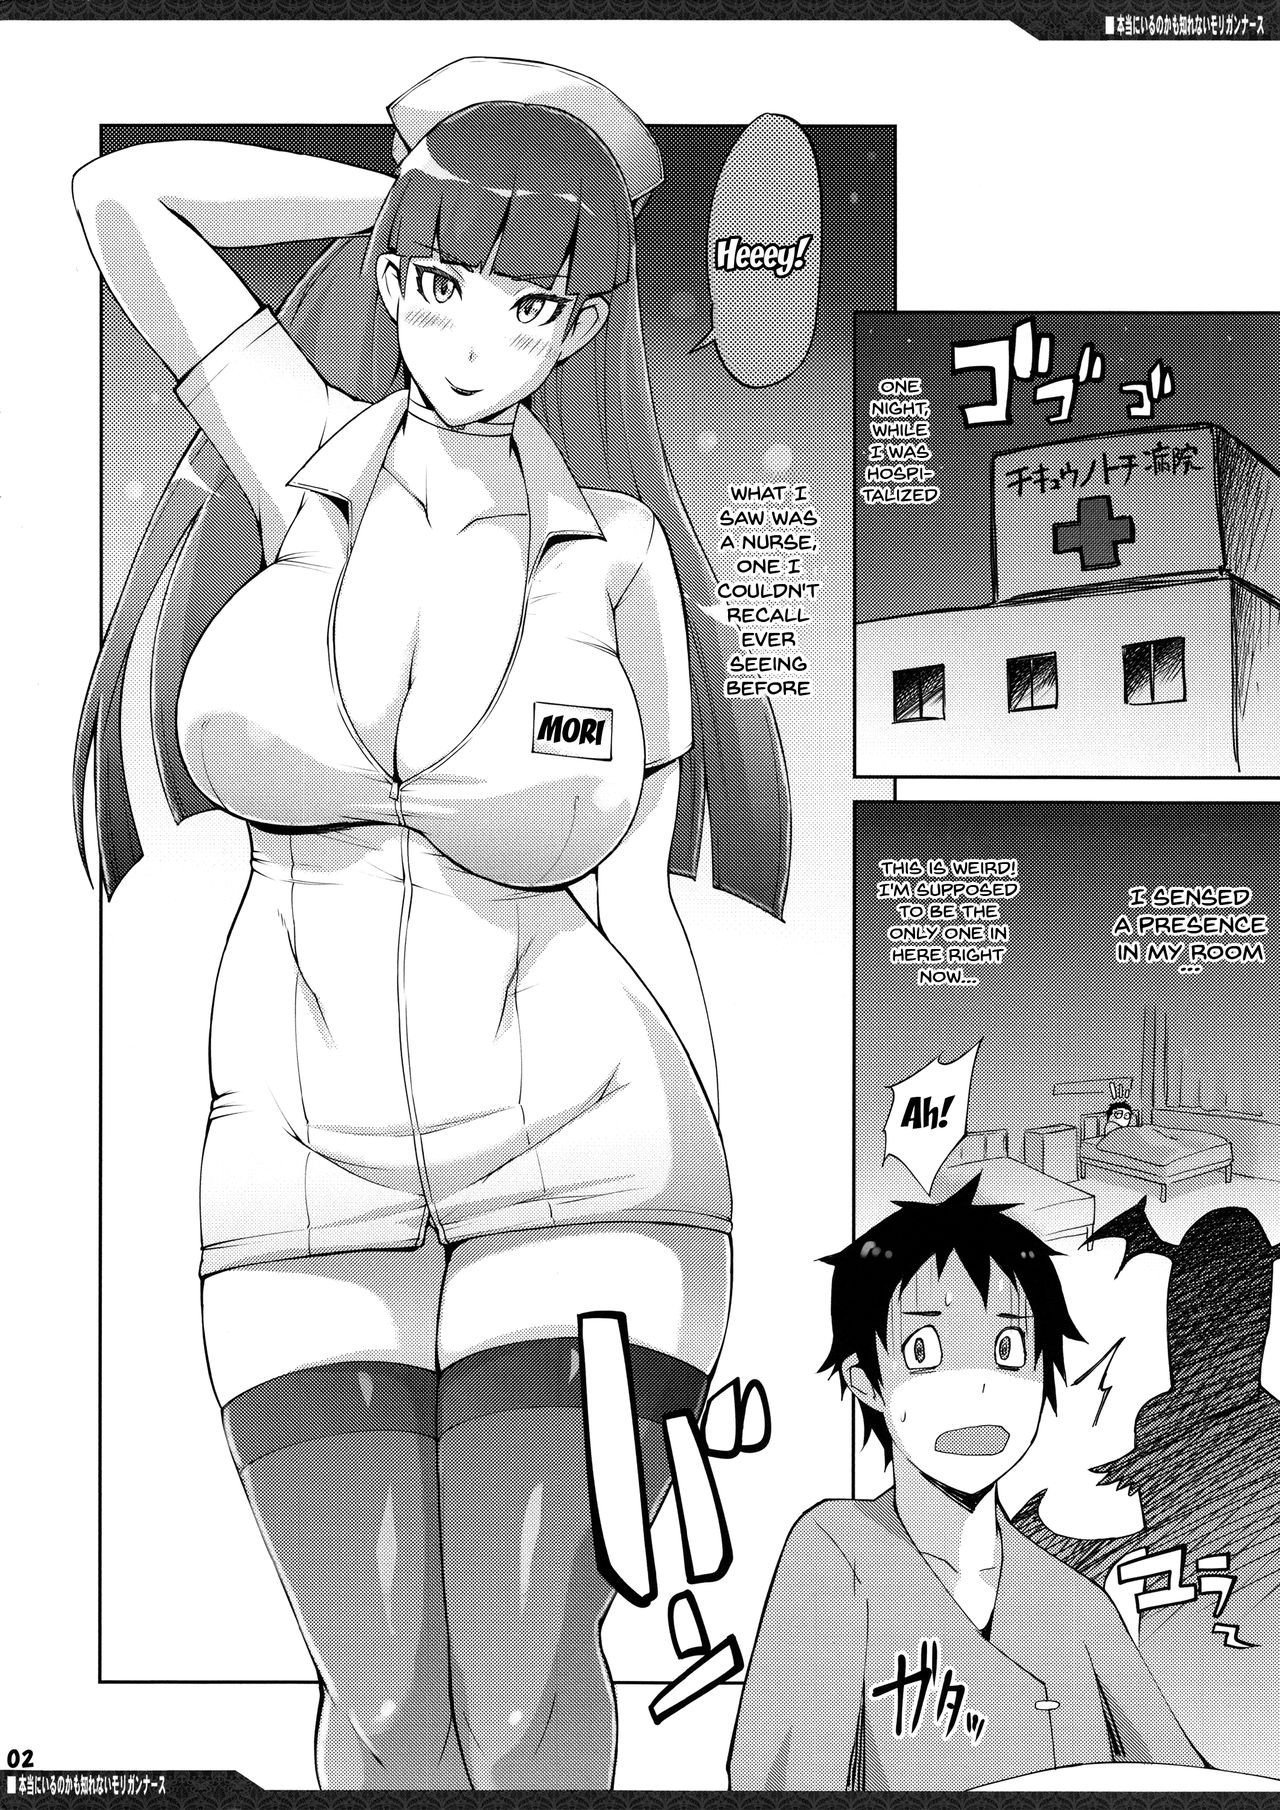 Cartoon Sex Porn Nurse Boobs - Yunioshi â€“ Hontou ni Iru no kamo Shirenai Morrigan Nurse | Top Hentai Comics